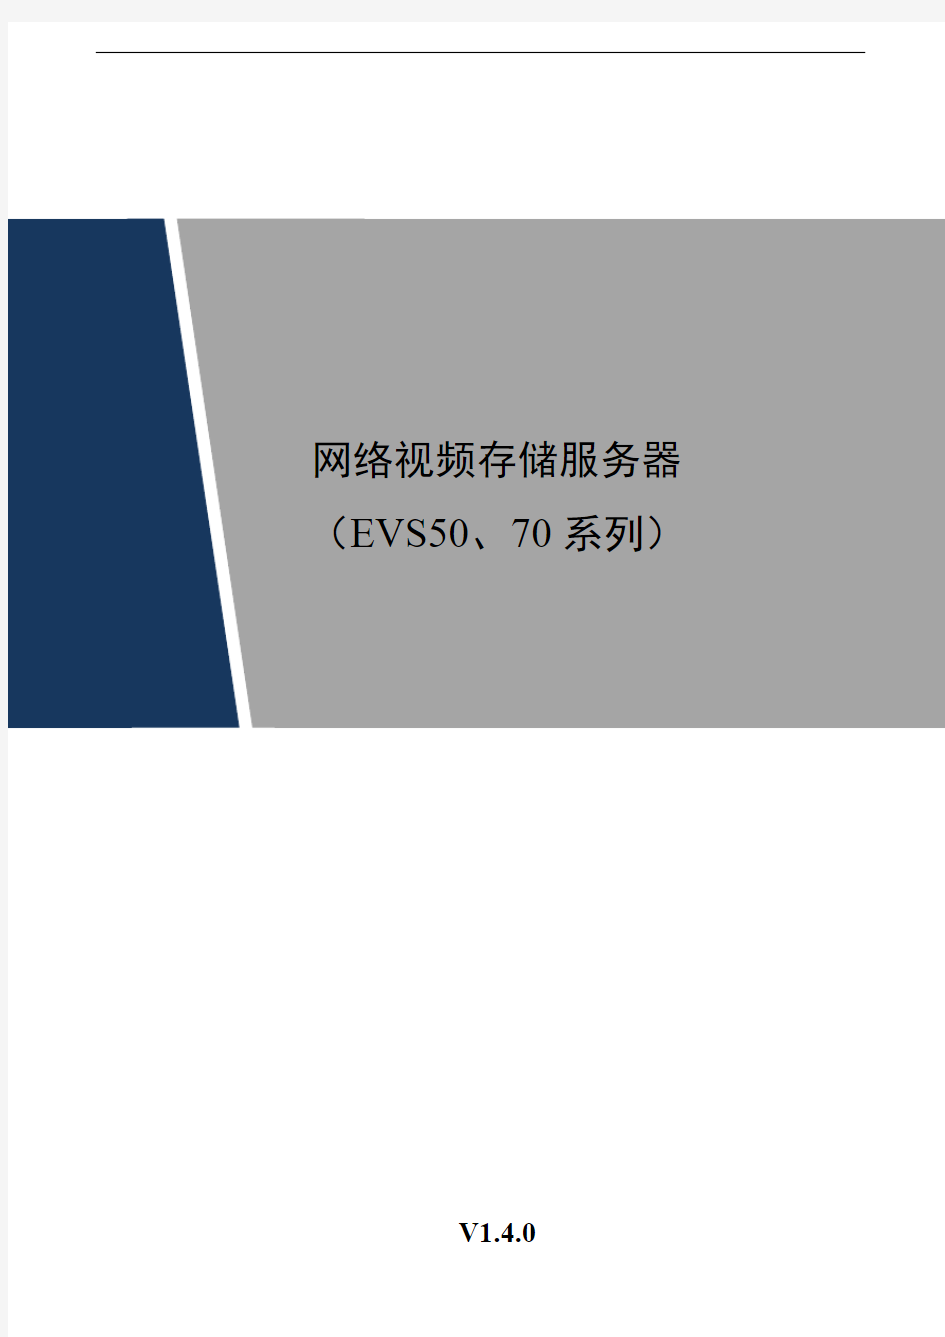 网络视频存储服务器EVS系列快速操作手册V